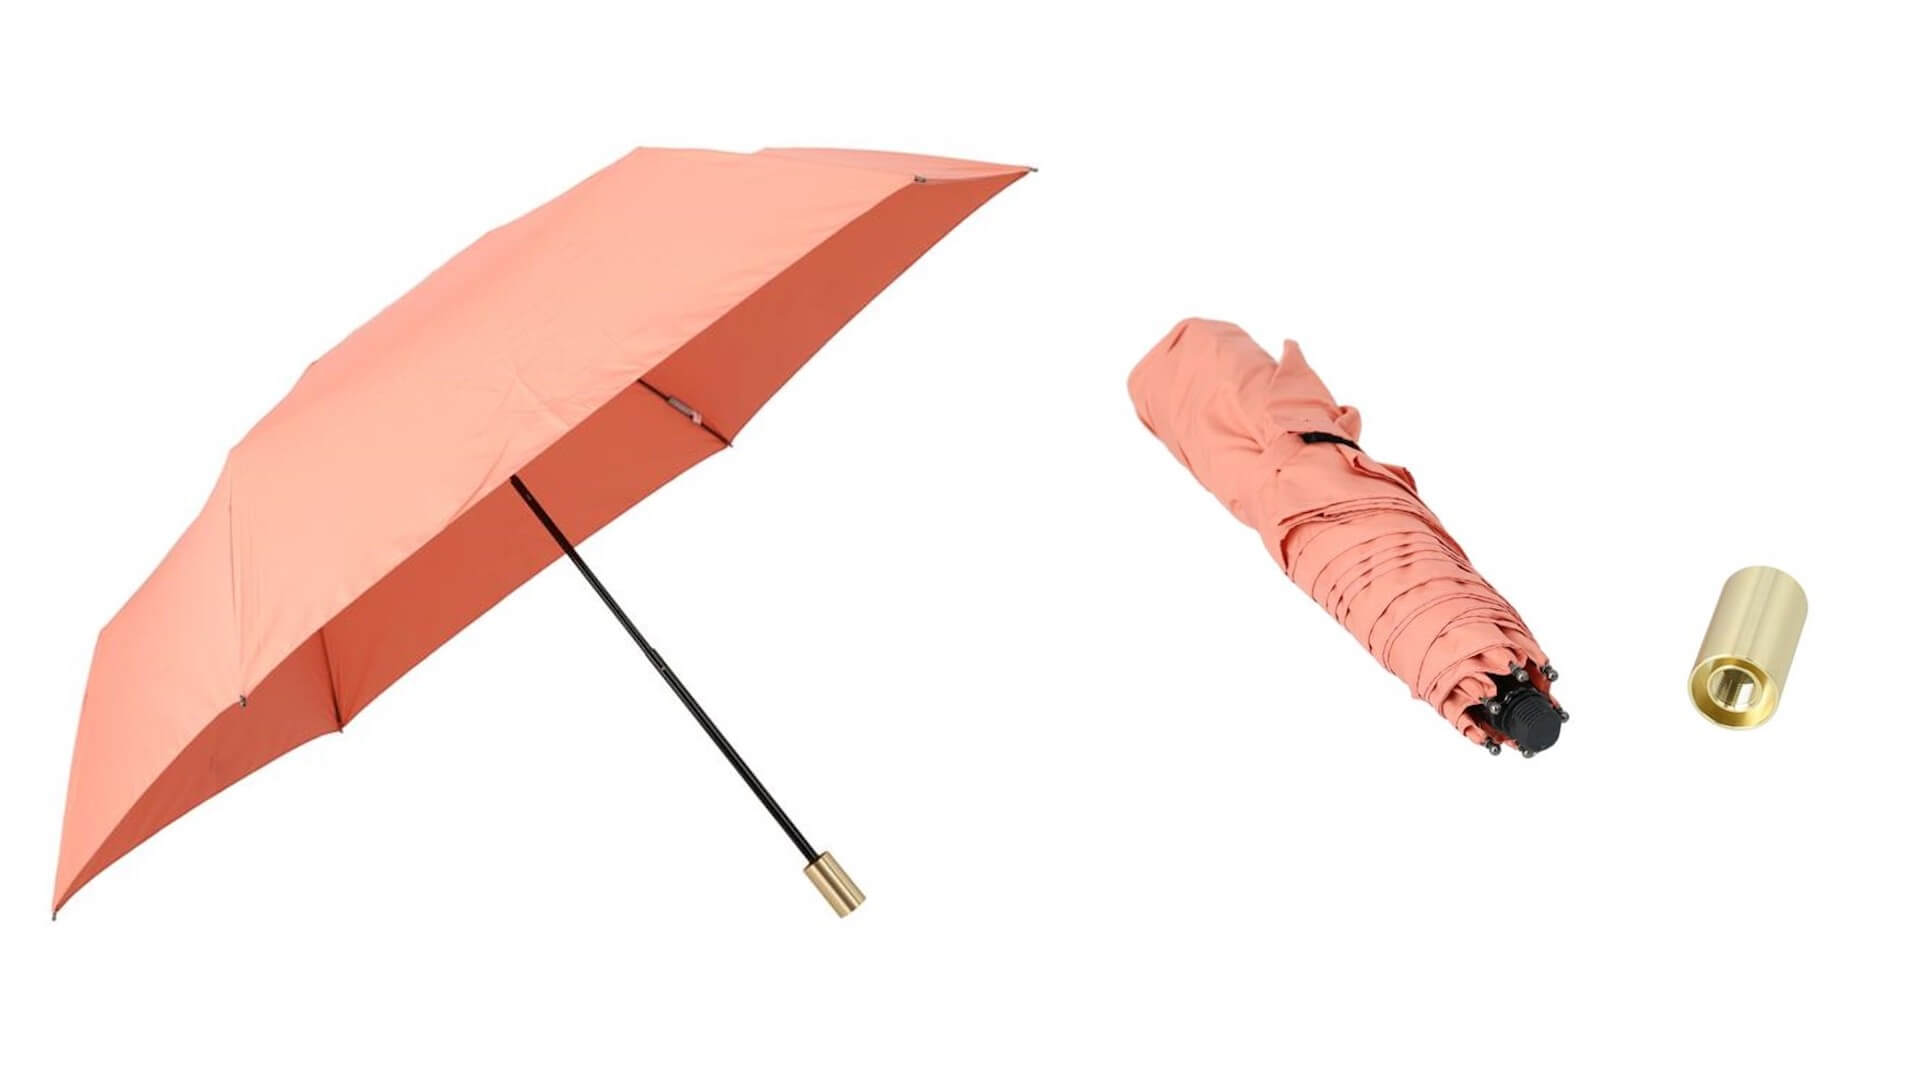 ソーシャルディスタンス確保や熱中症対策などができる最新機能を備えた傘がロフトにて展開中！新作をご紹介 lf200703_umbrella_03